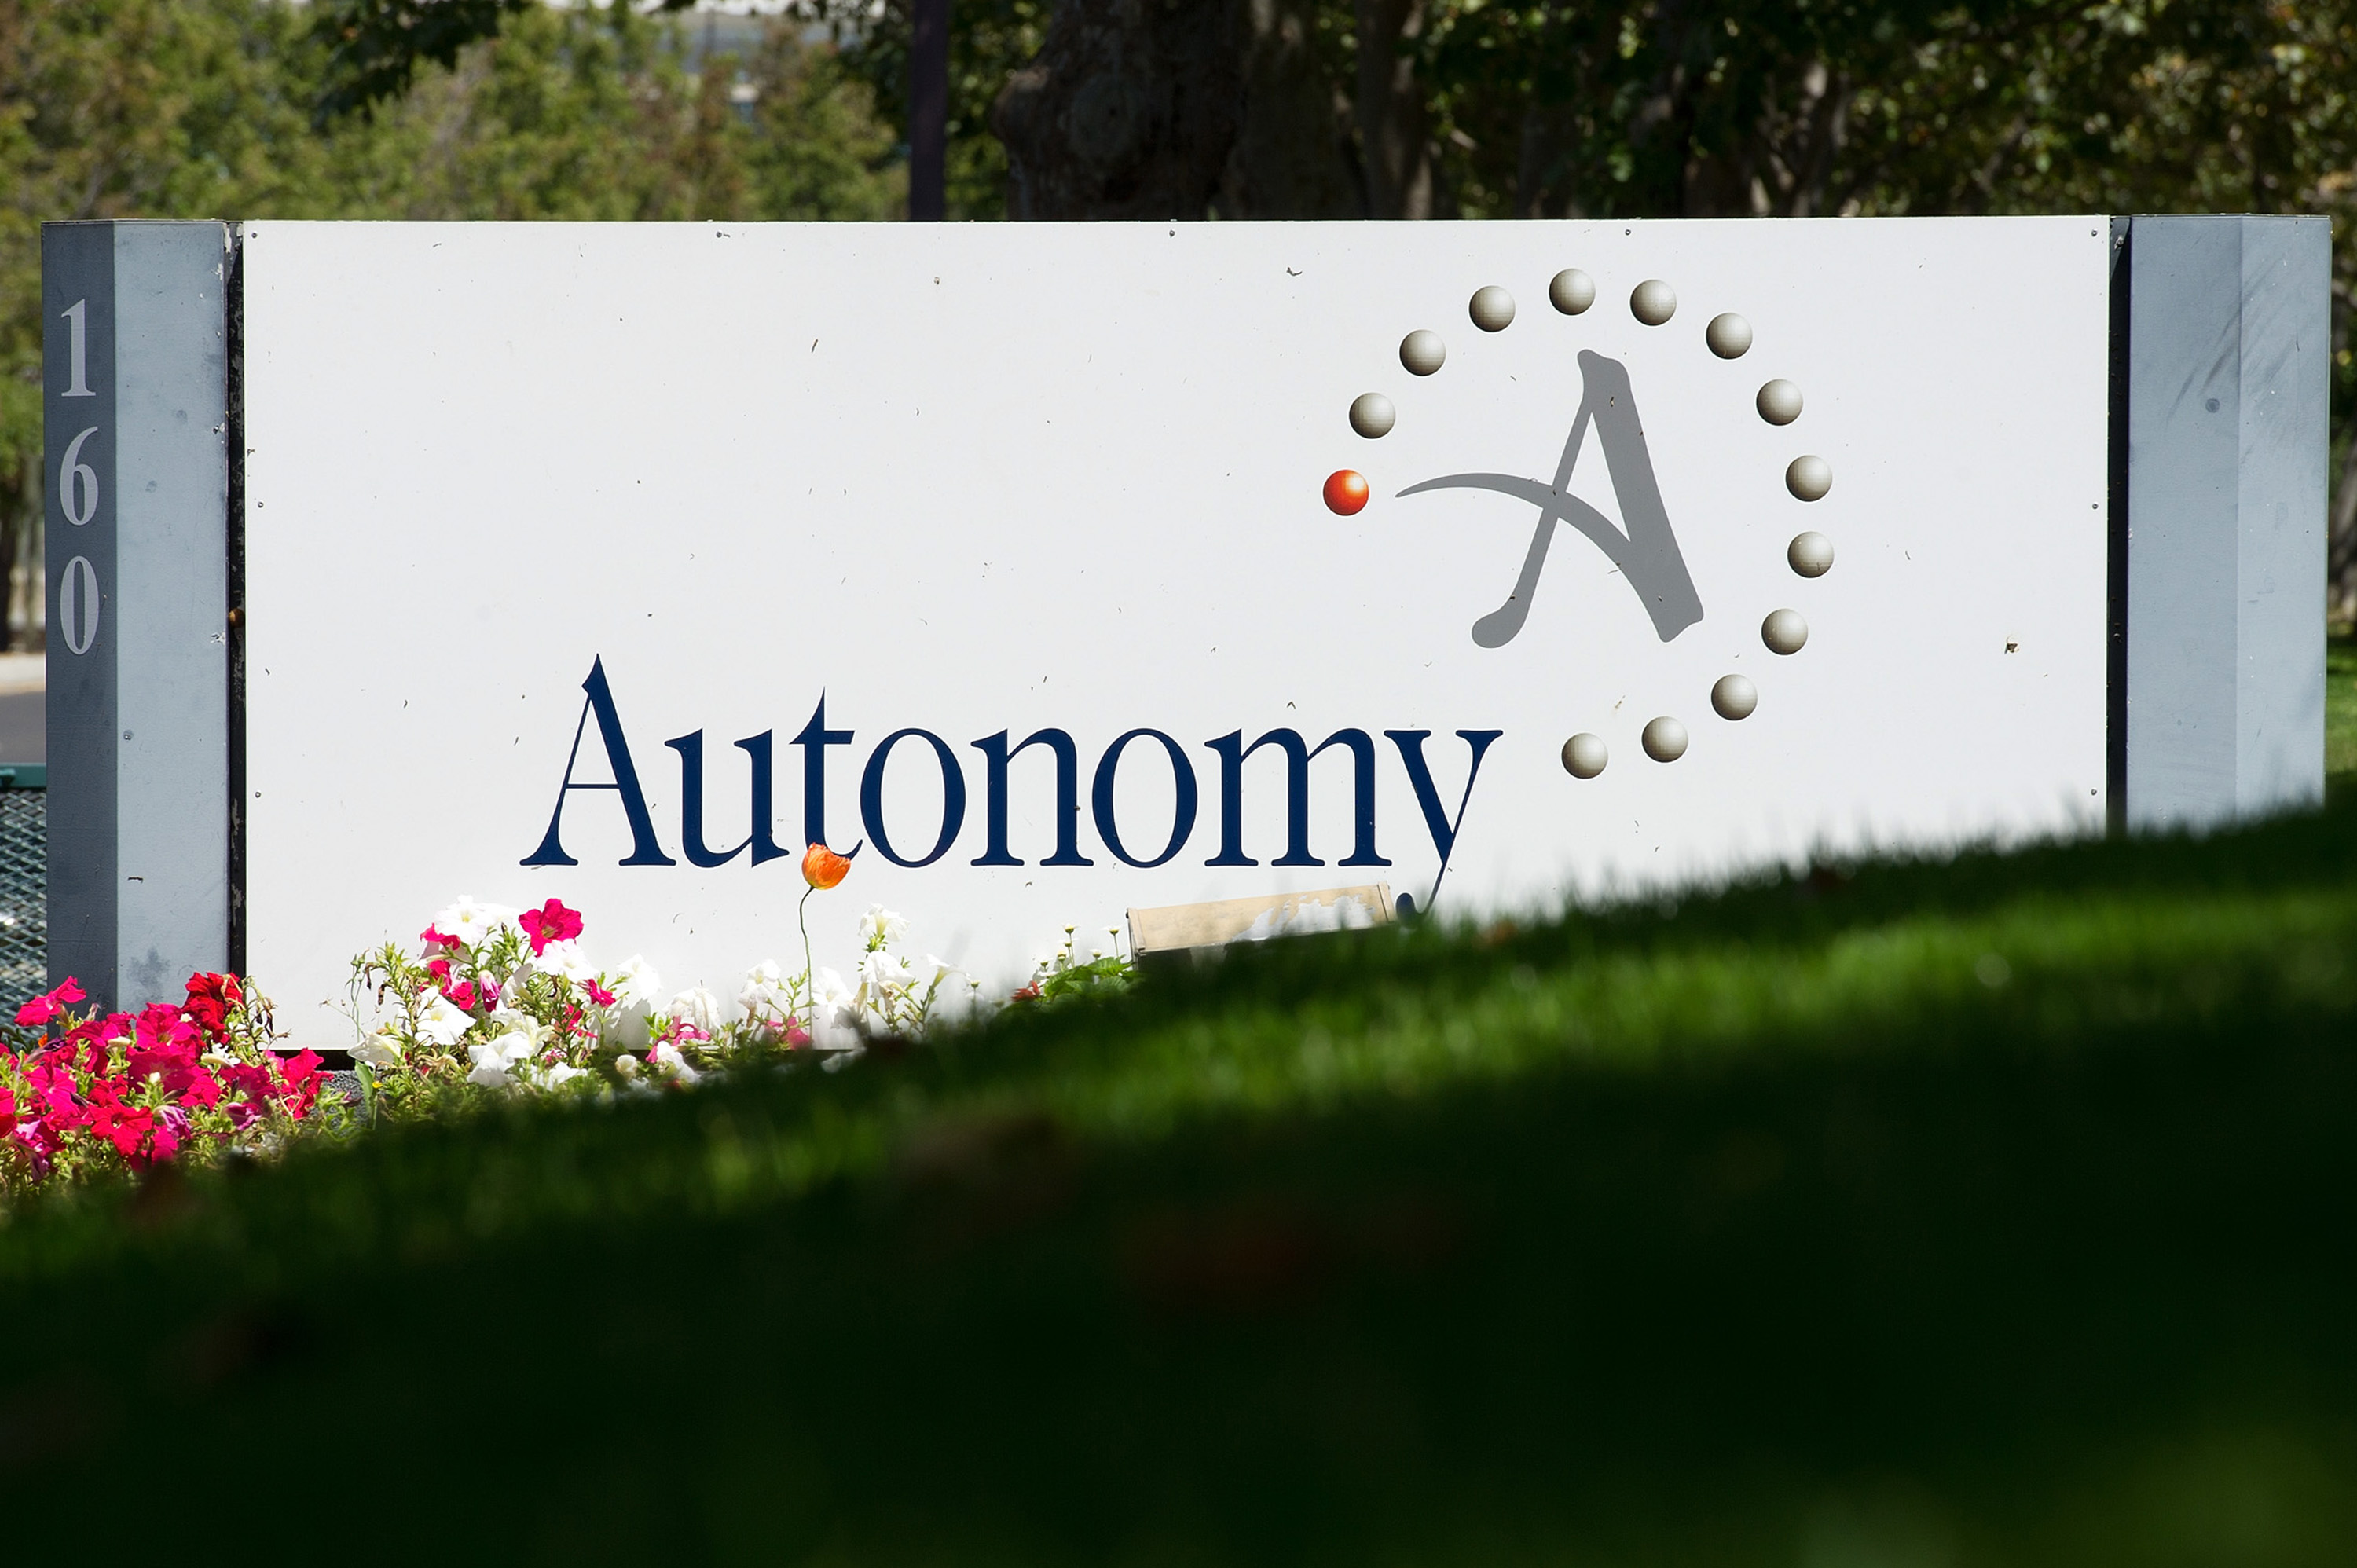 Autonomy companies